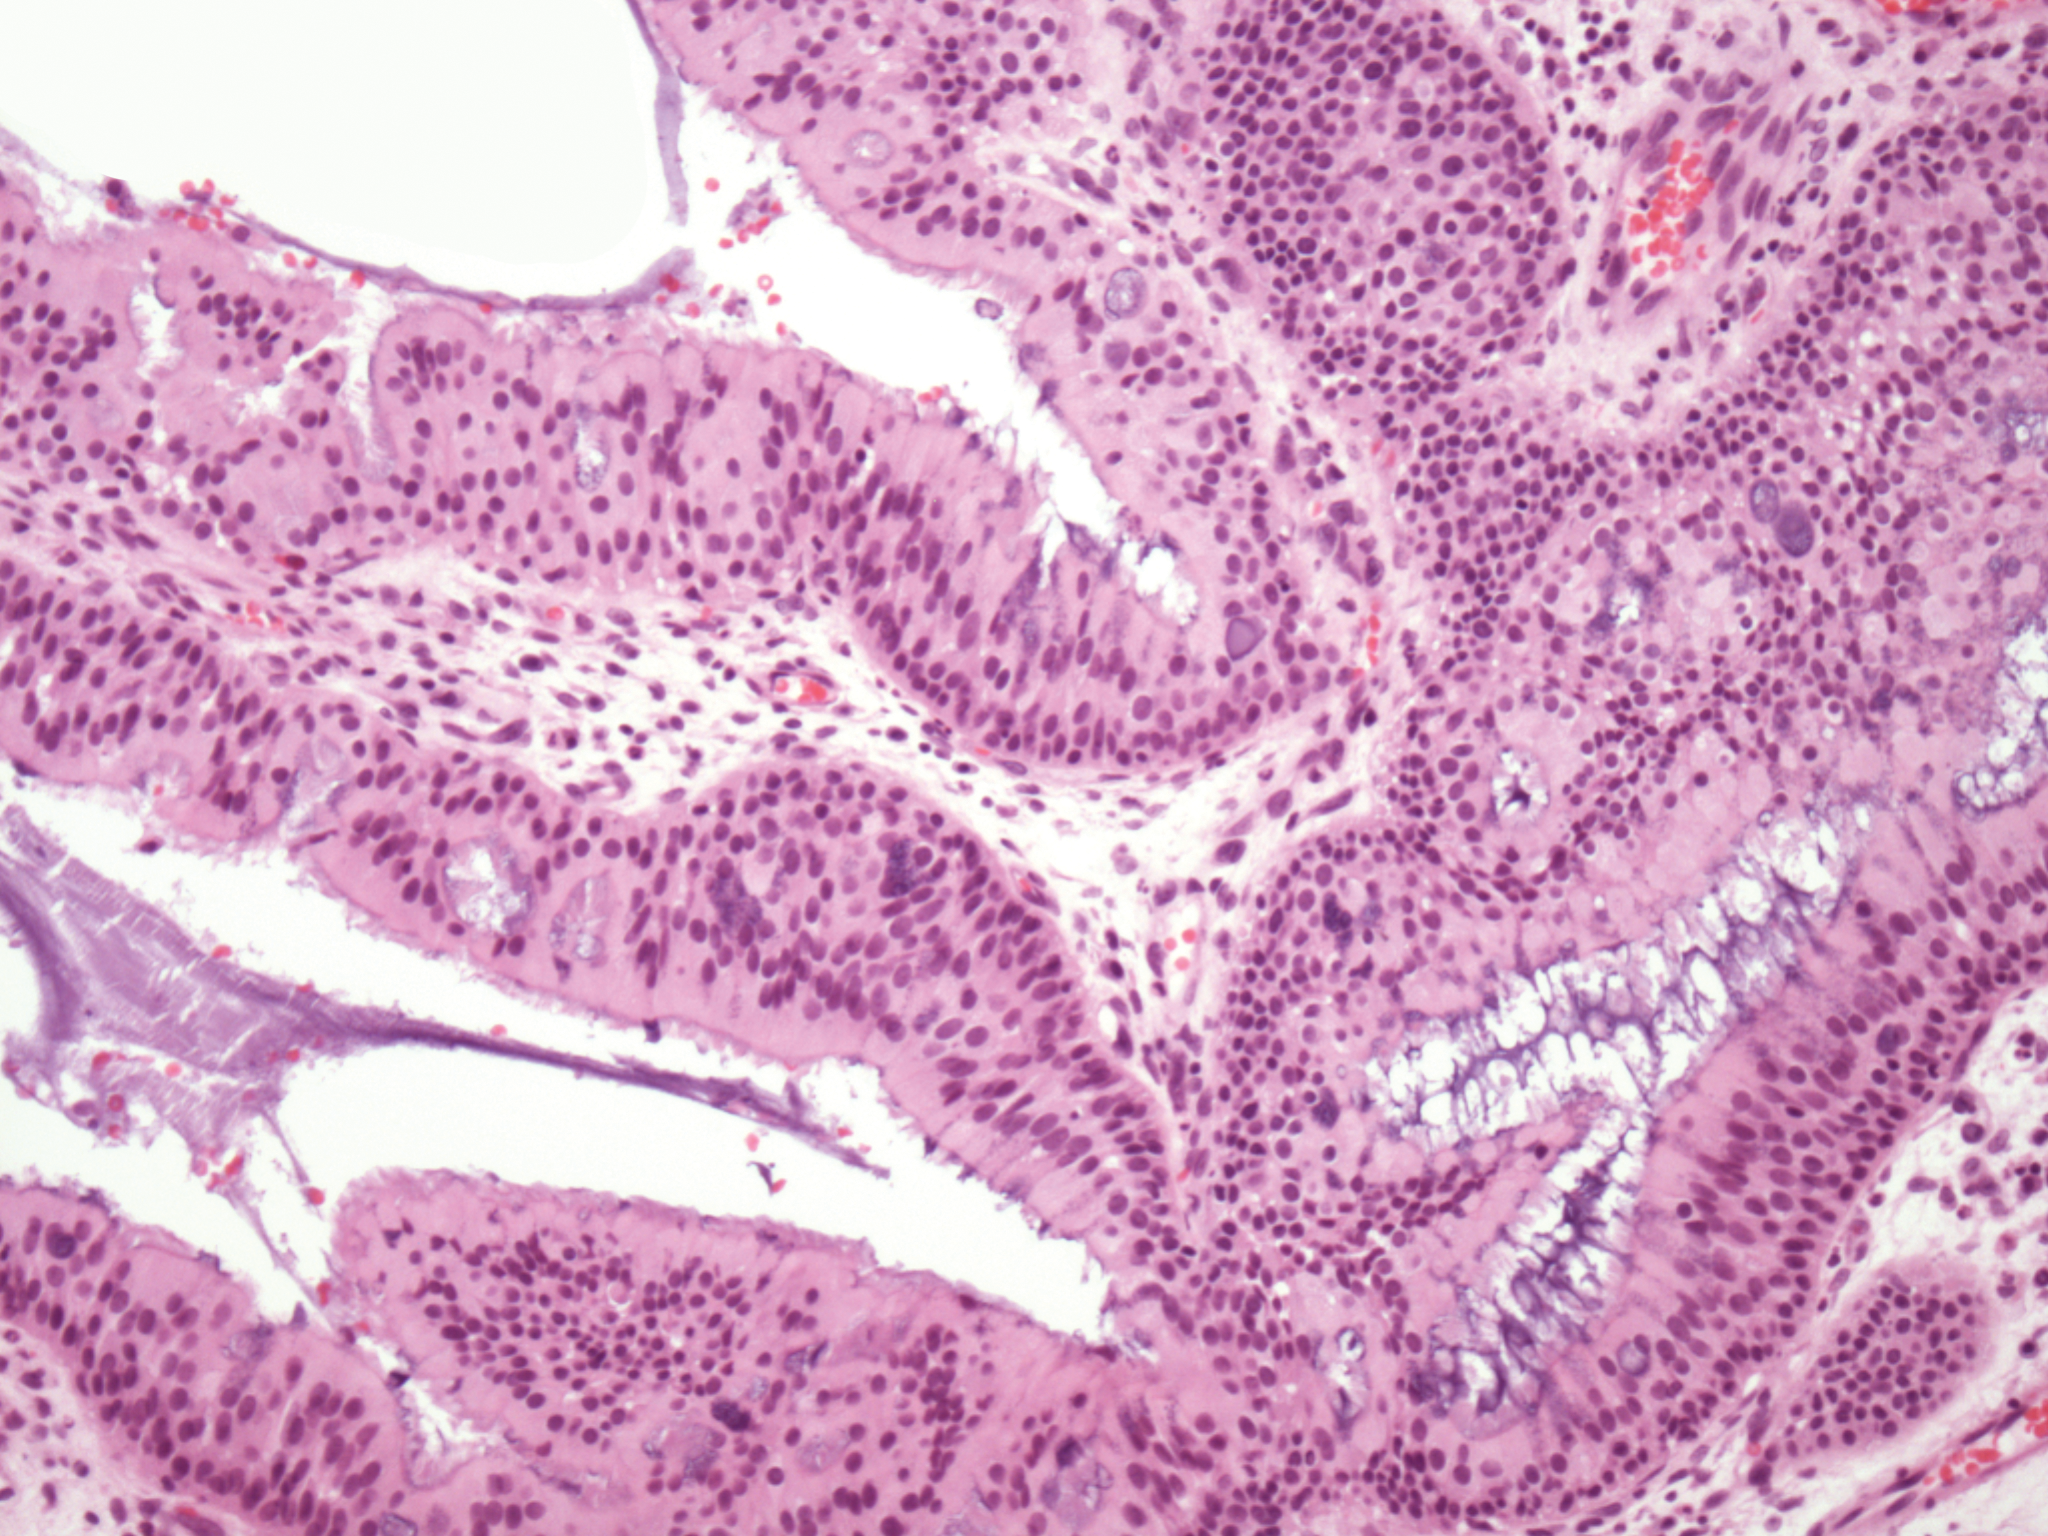 Sinonasal papilloma p16 Hpv head and neck cancer p16